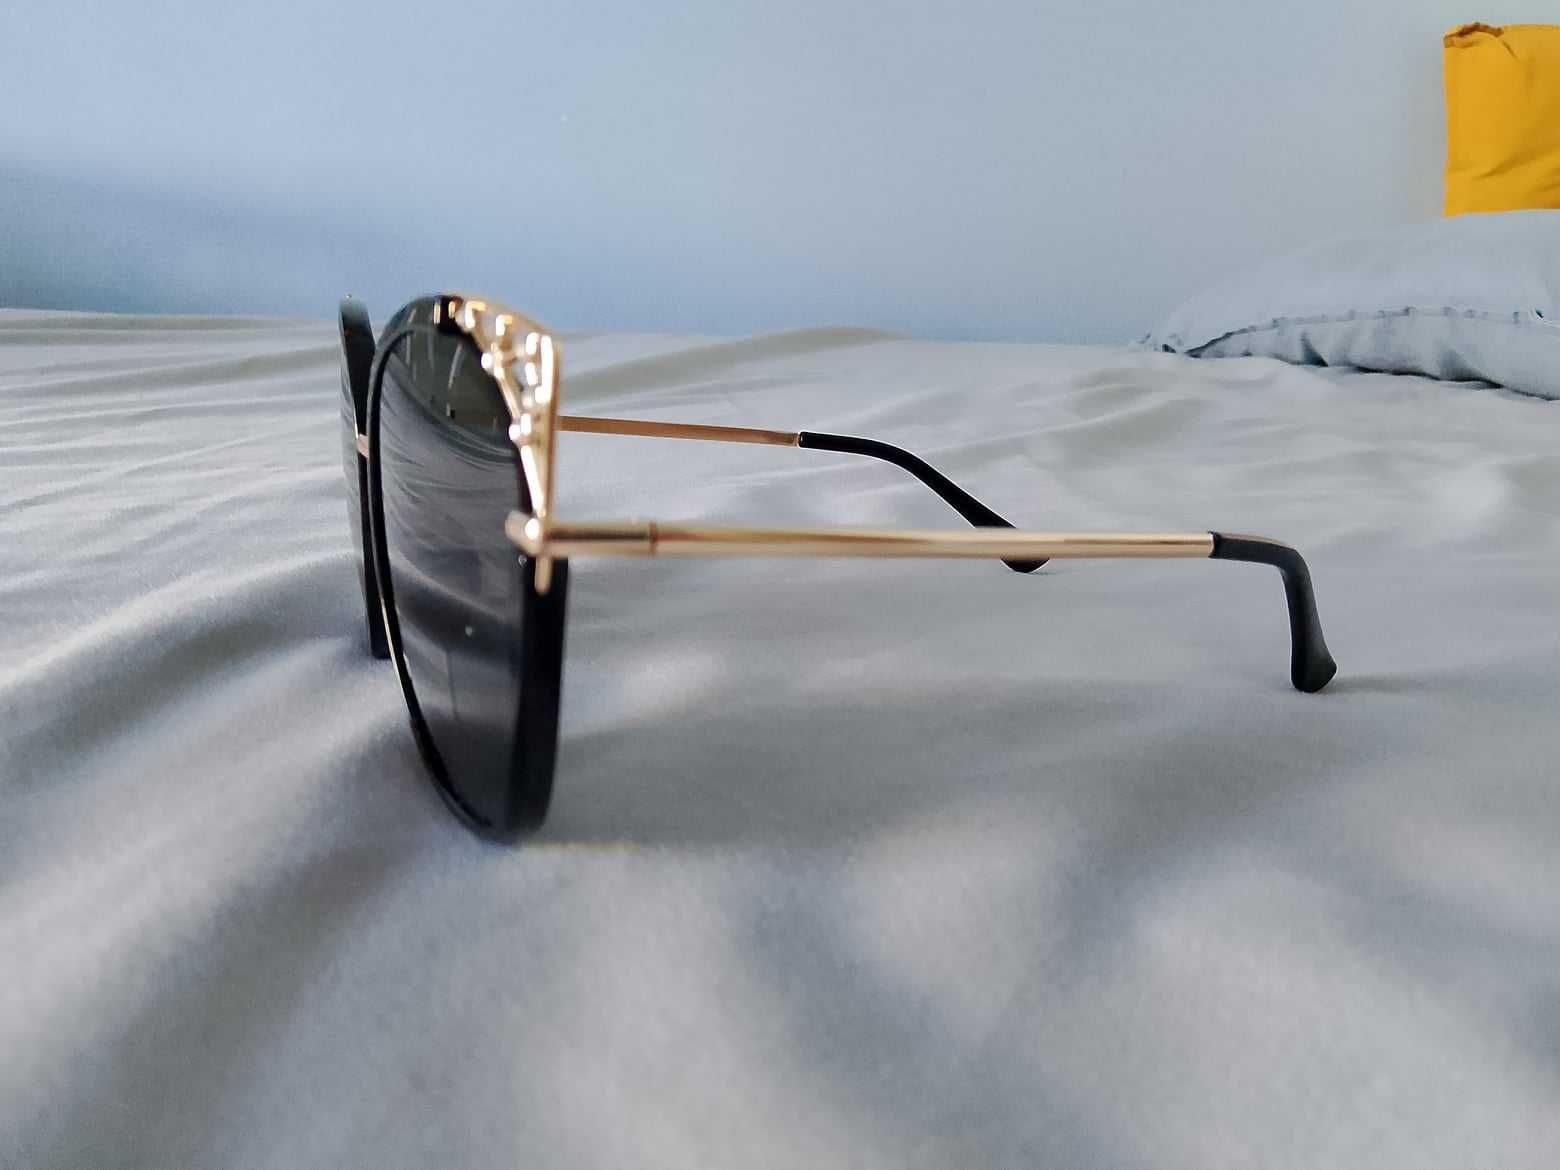 Modne Okulary Przeciwsłoneczne UV 400, Ładne Oprawki, Nowe, Lato